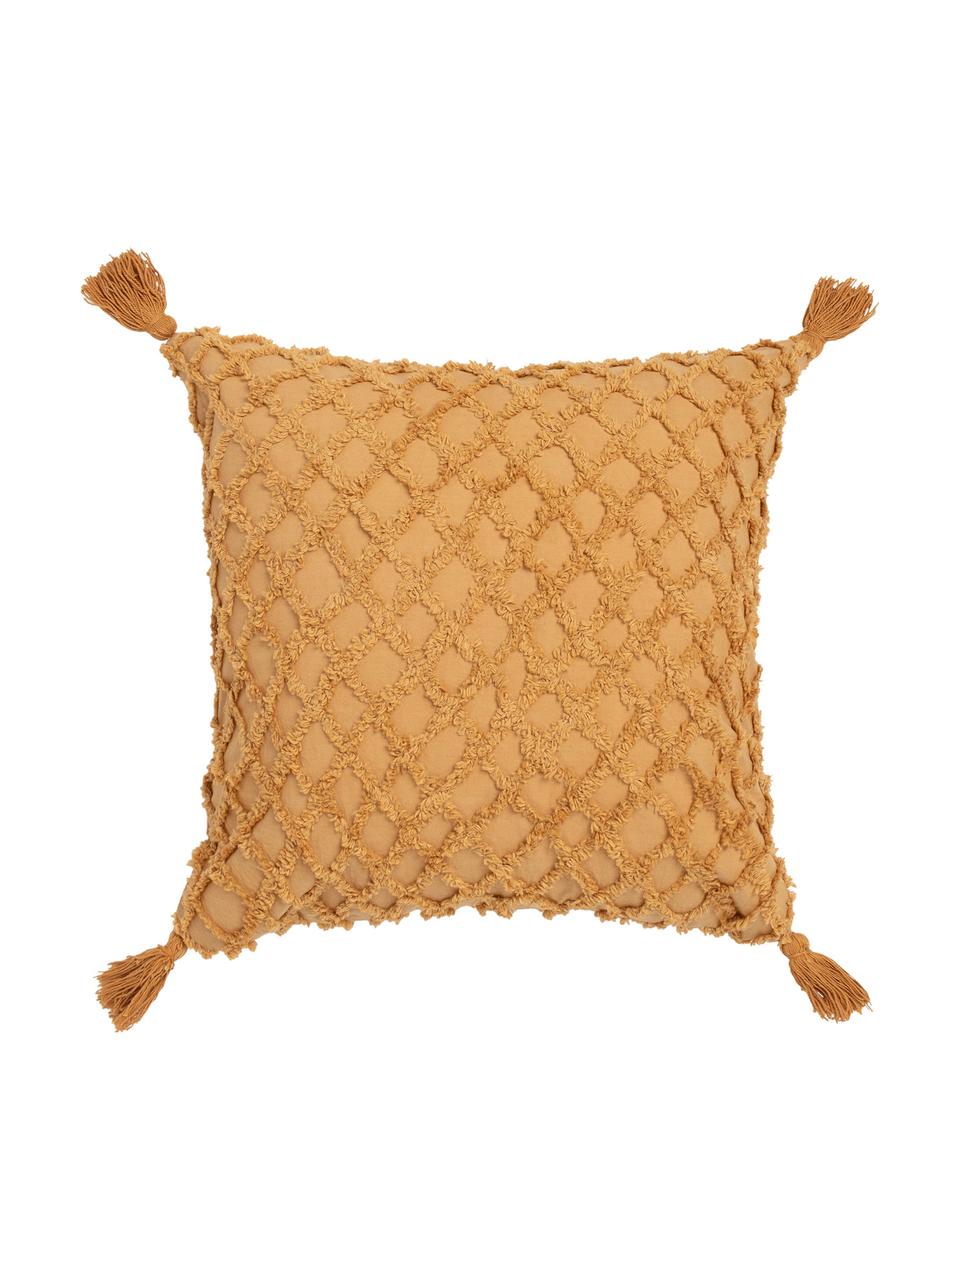 Poszewka na poduszkę z chwostami Royal, 100% bawełna, Żółty, S 45 x D 45 cm